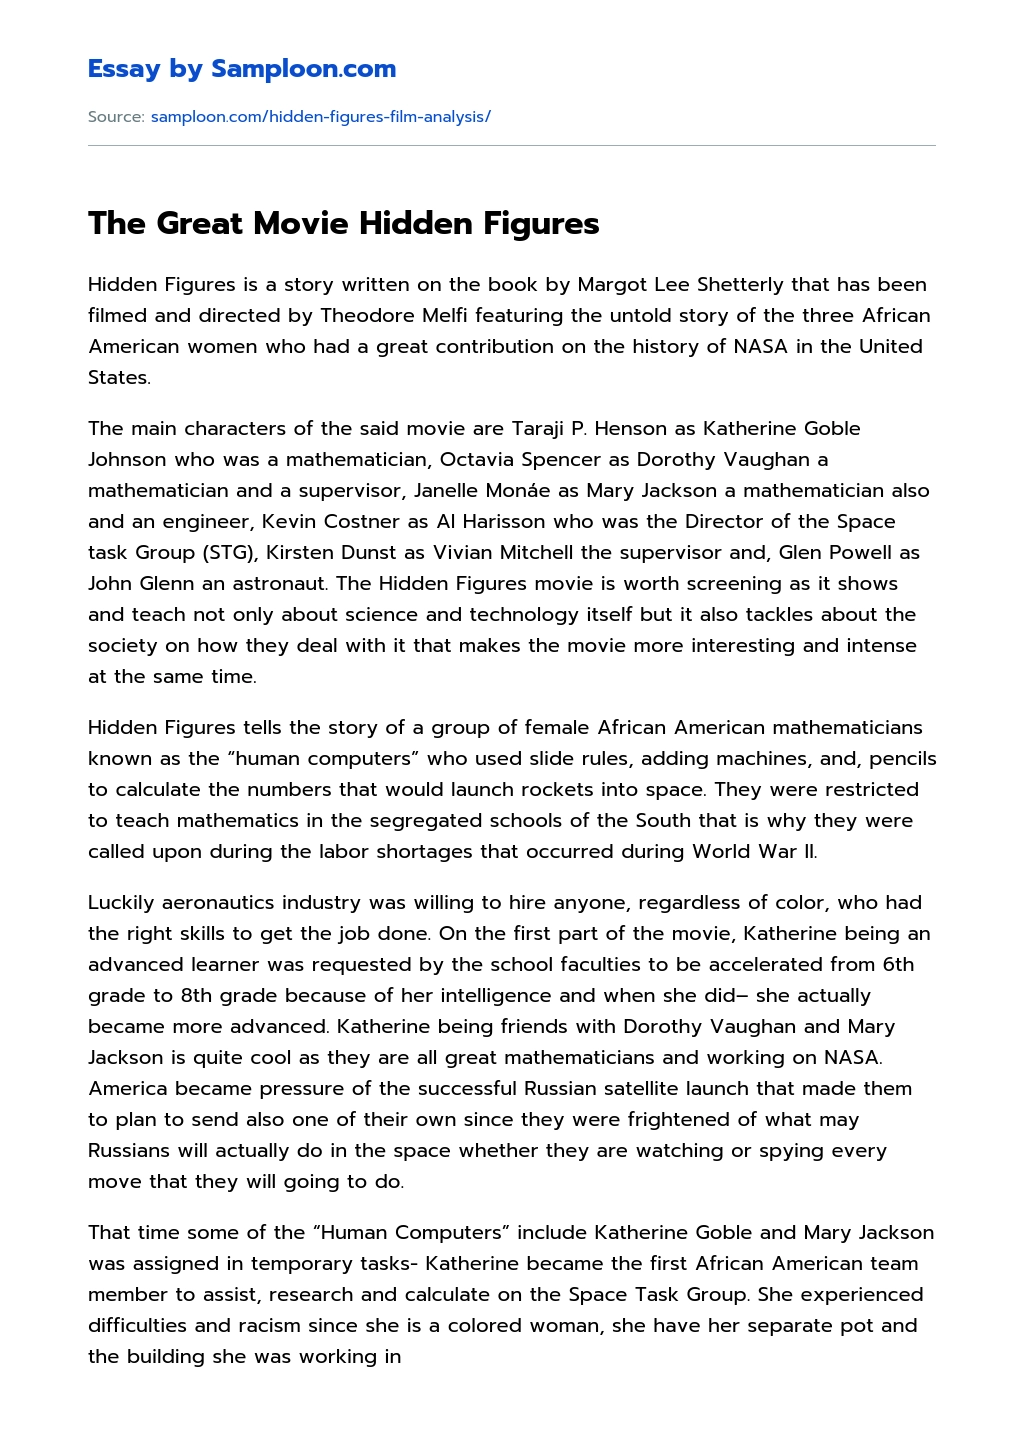 The Great Movie Hidden Figures essay